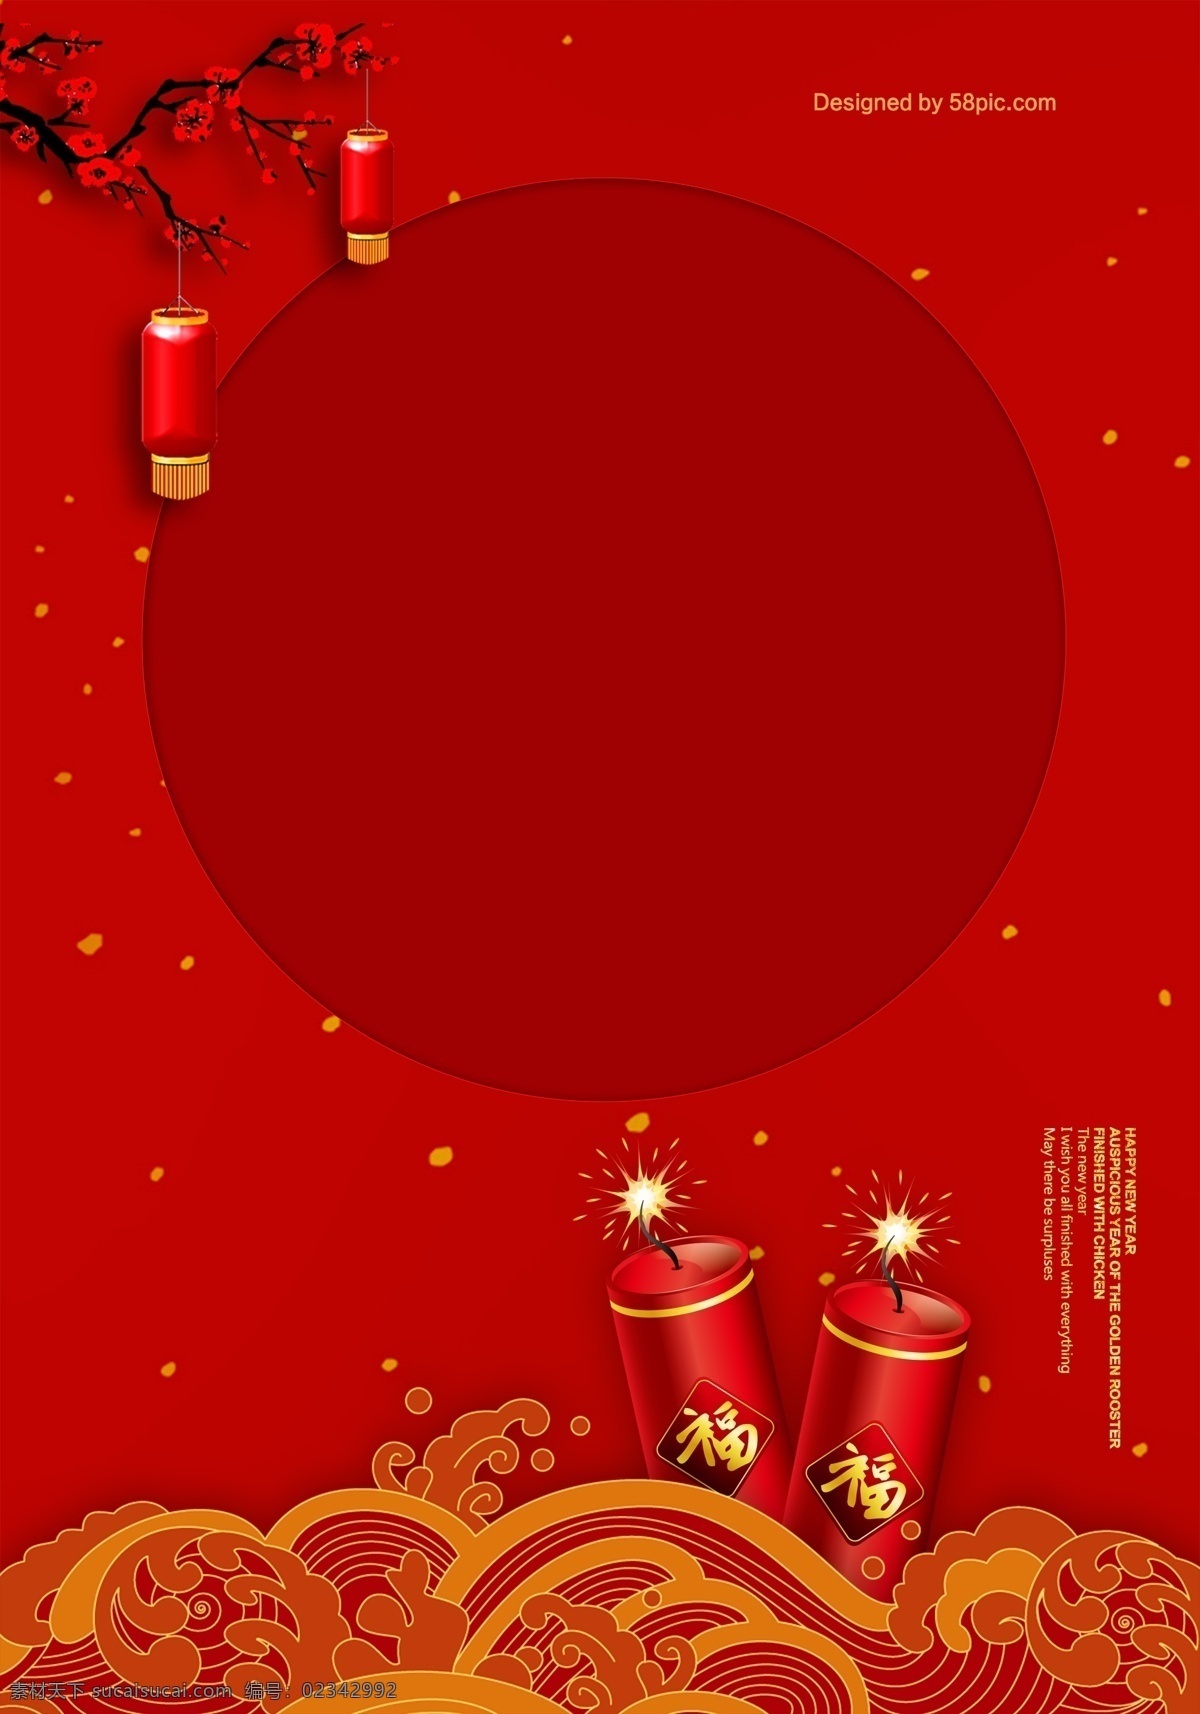 红 金色 大气 圣诞 狂欢 节日 背景 质感 红色 圣诞节 卡通 水晶球 雪人 海报 童趣 手绘